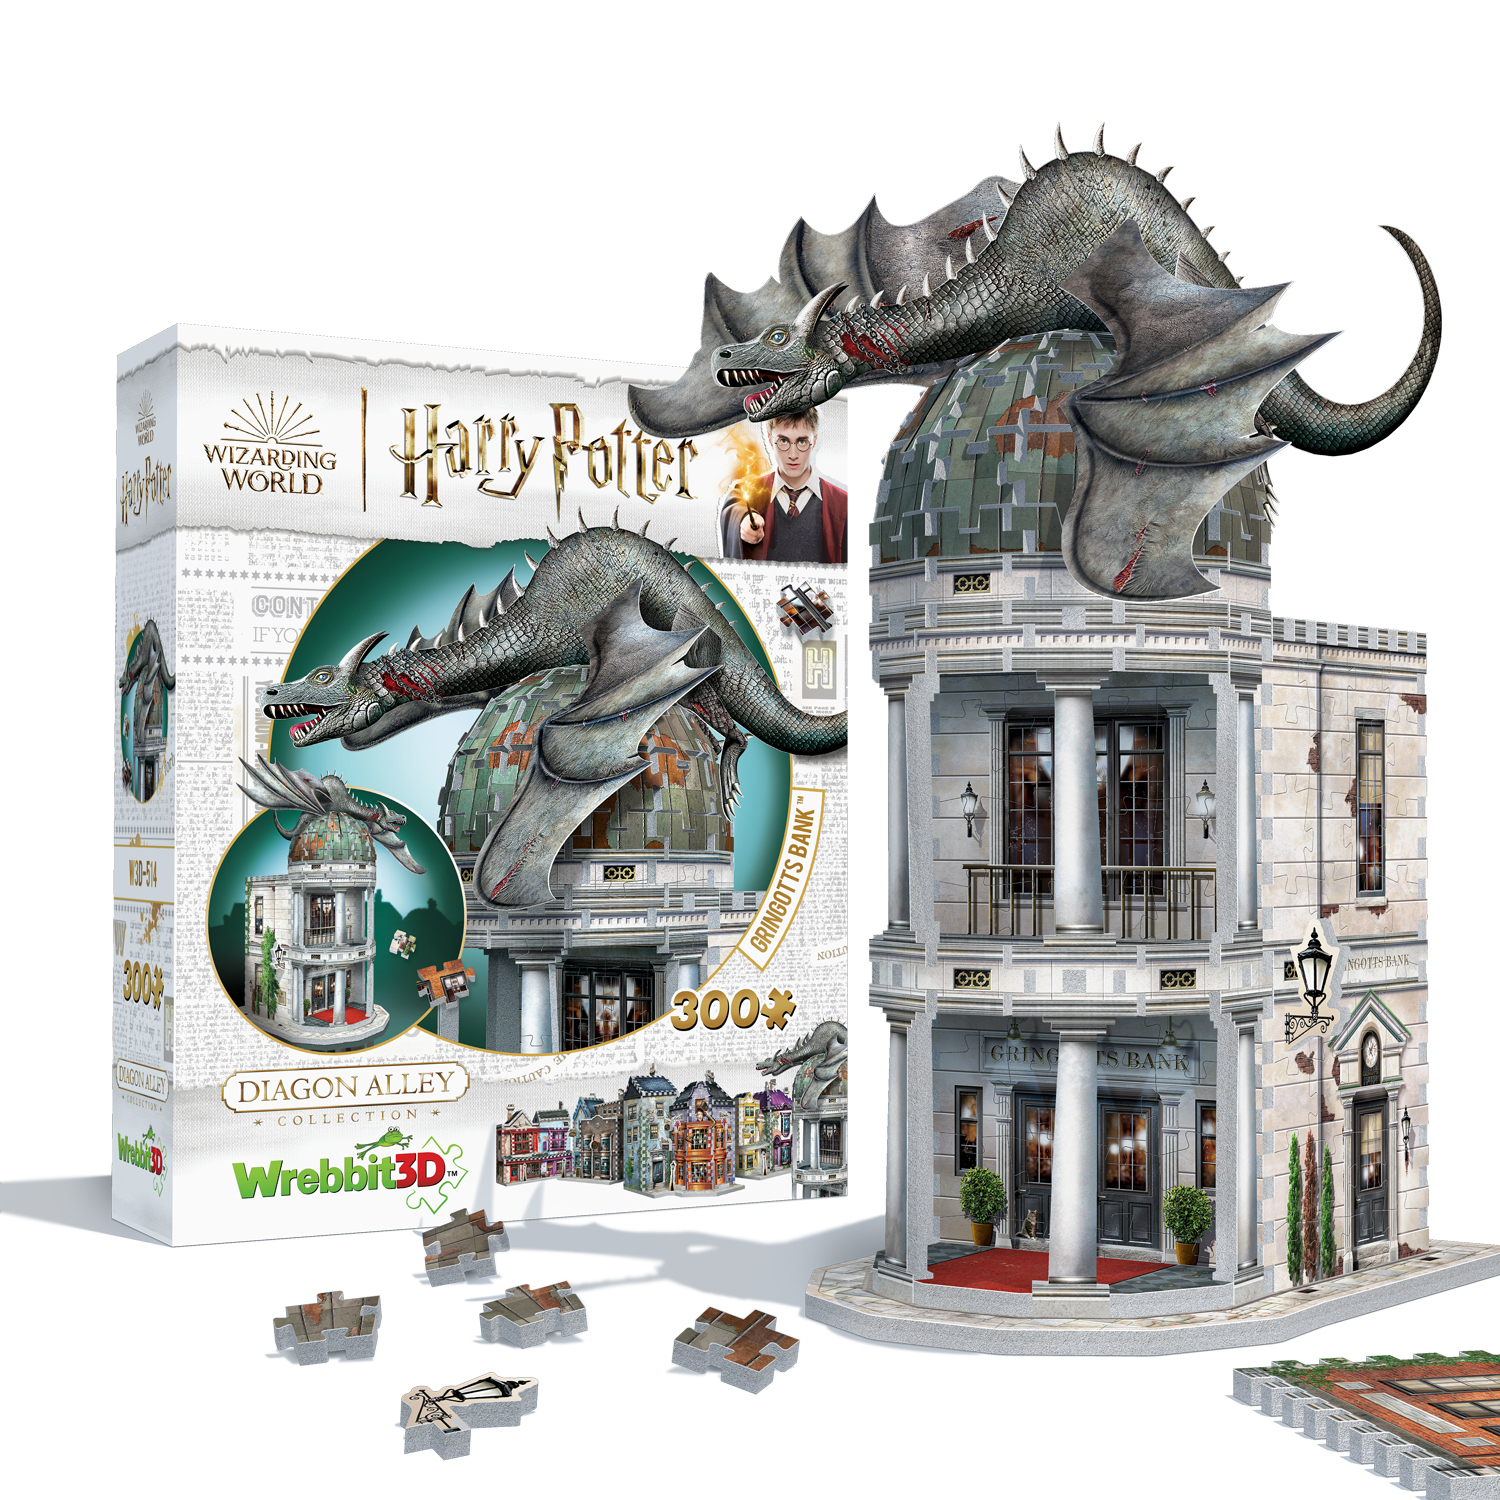 Nouveaux puzzles 3D Harry Potter par Wrebbit ! — La Gazette du Sorcier